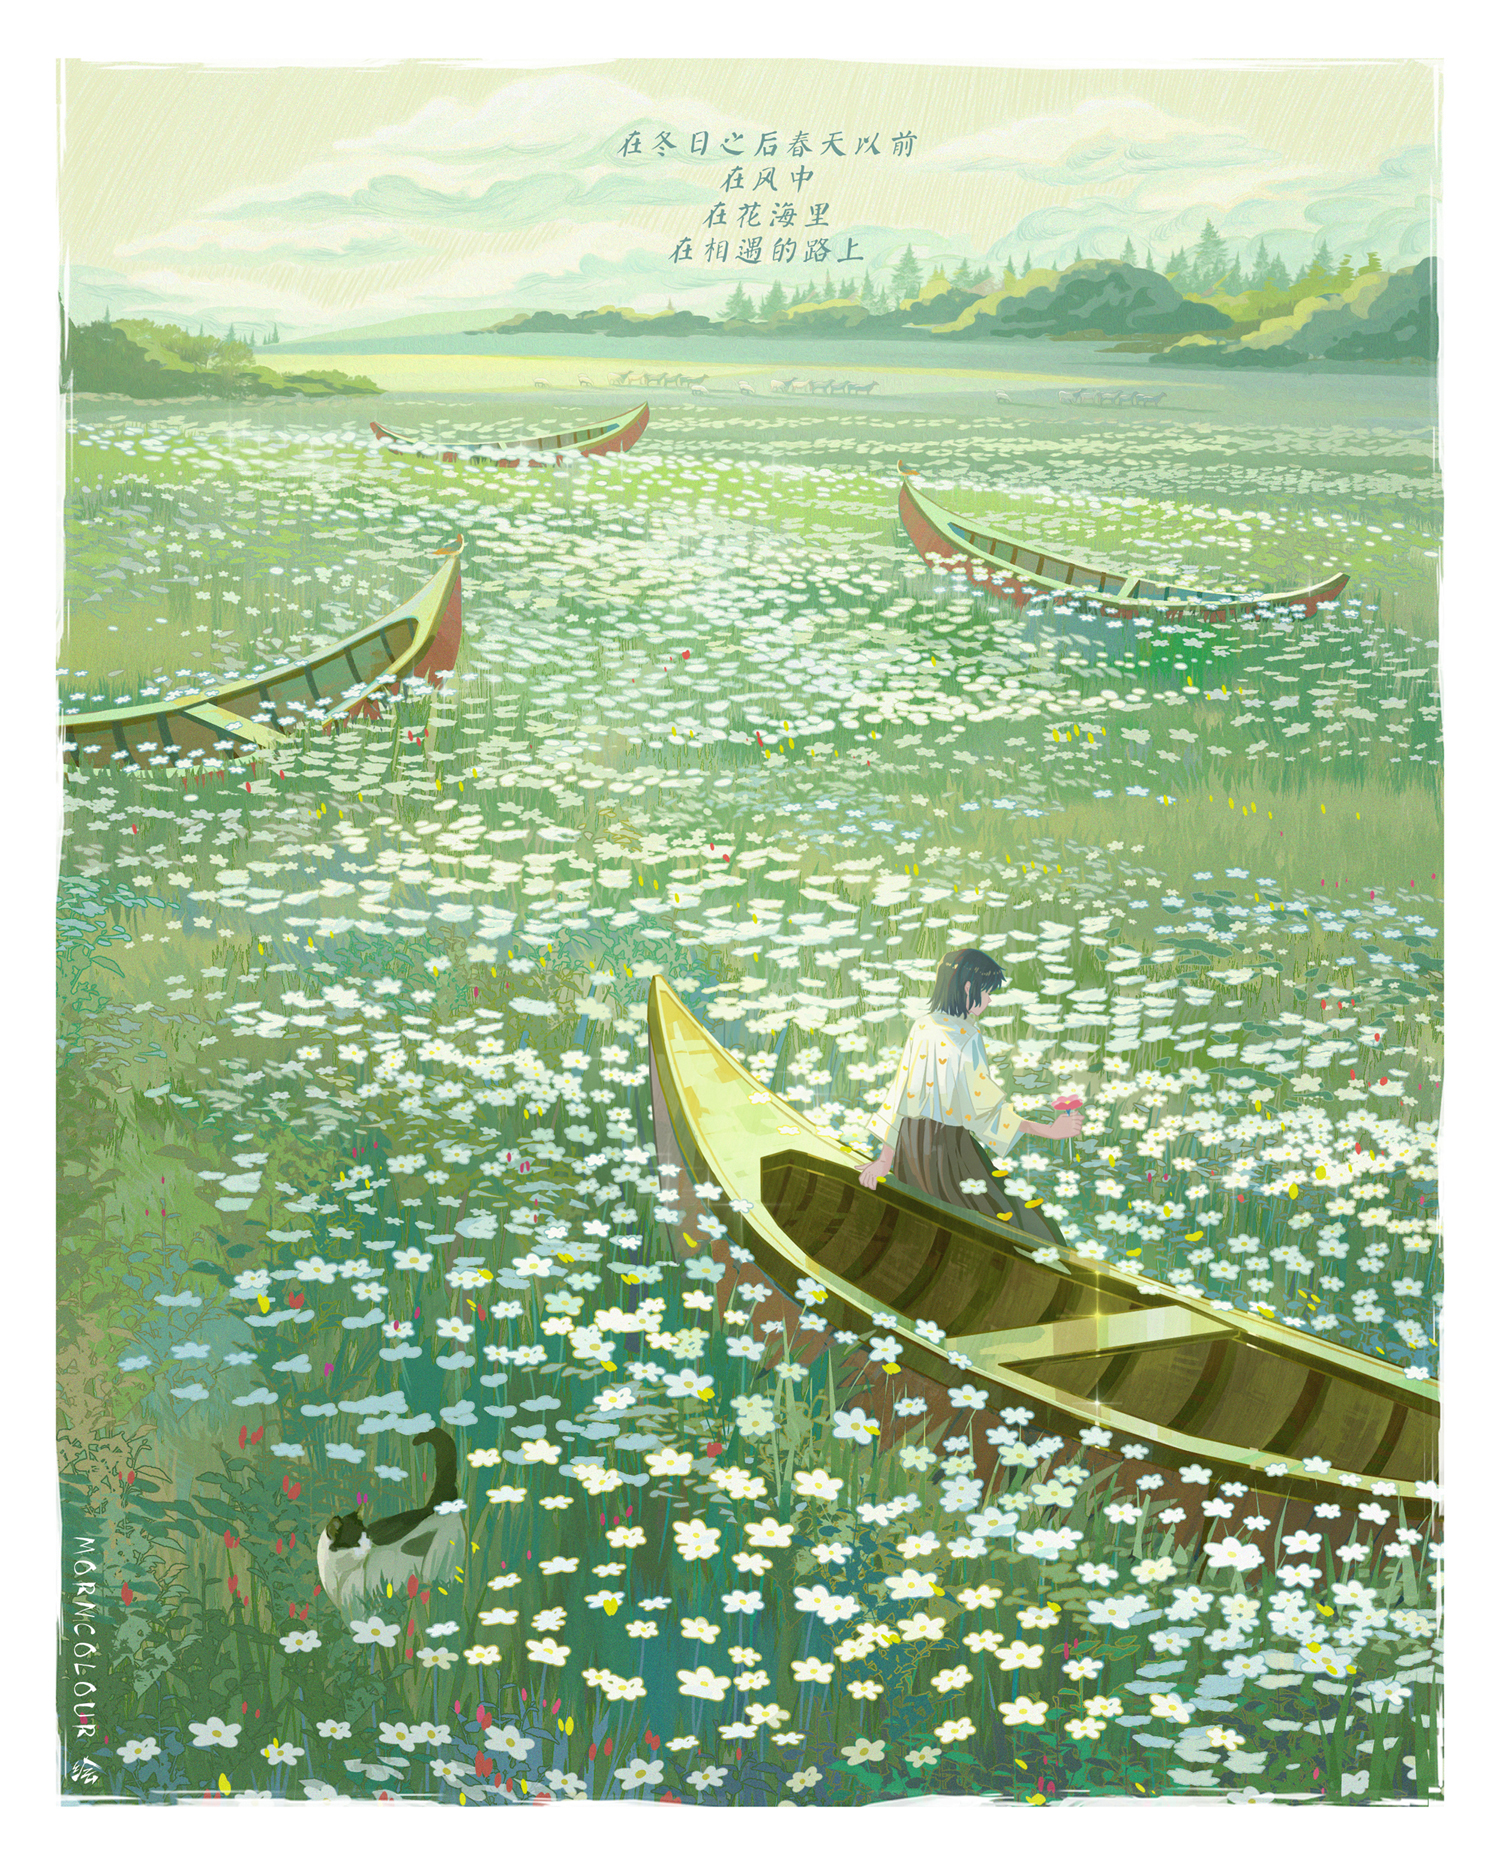 Фото Девушка с цветком в руке сидит на борту лодки на цветочной поляне, рядом гуляет кошка